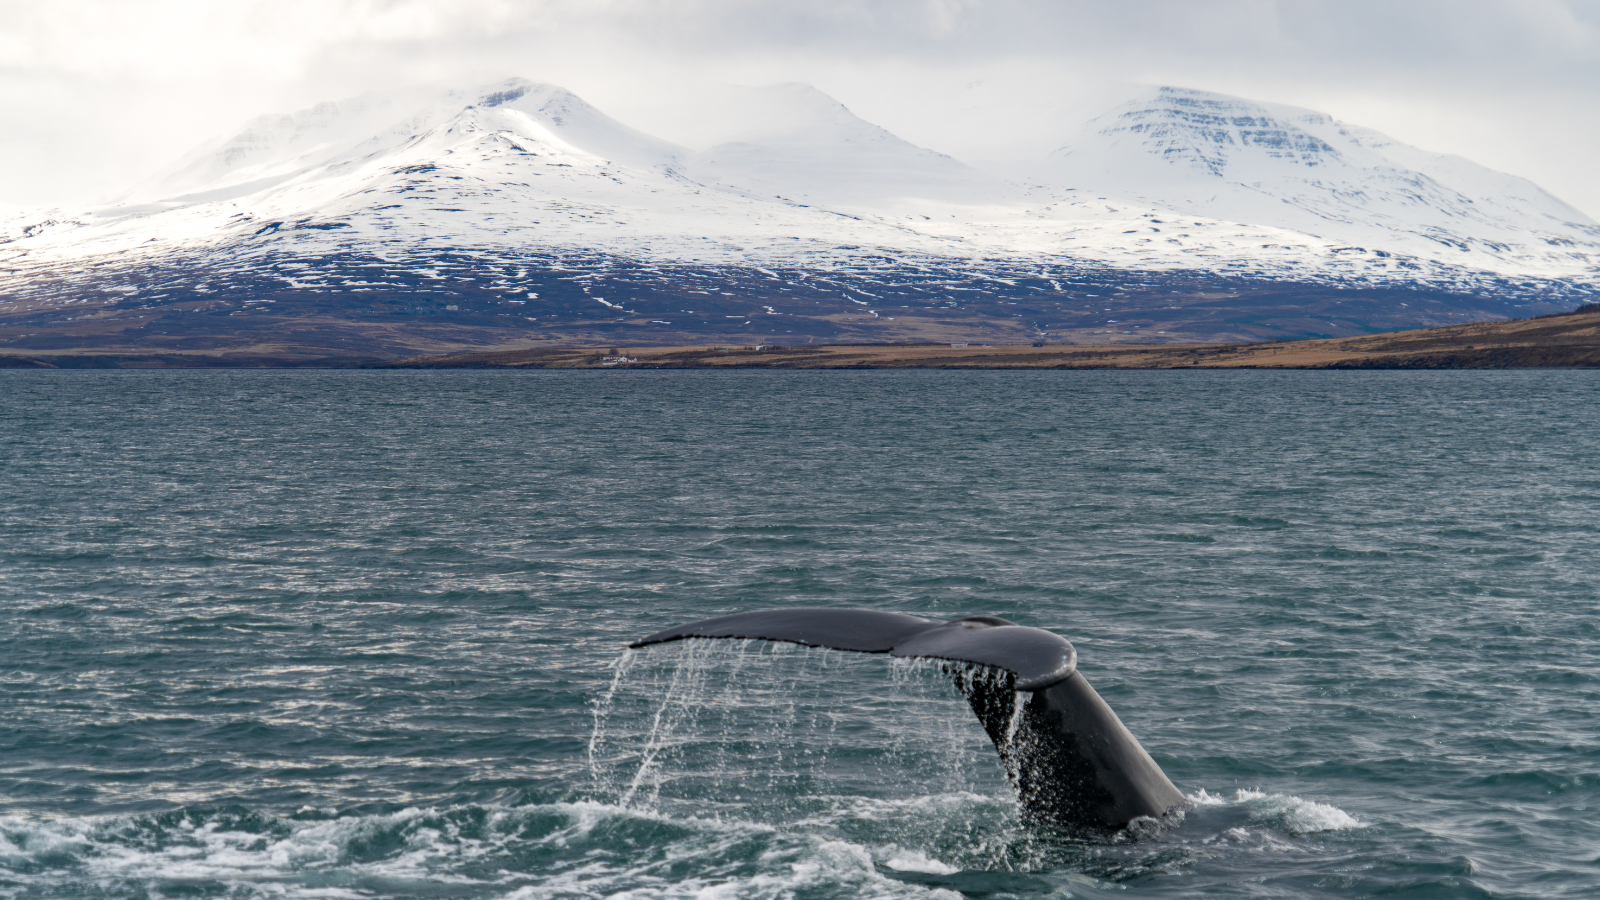 Whale tail breaching the surface near Akureyri